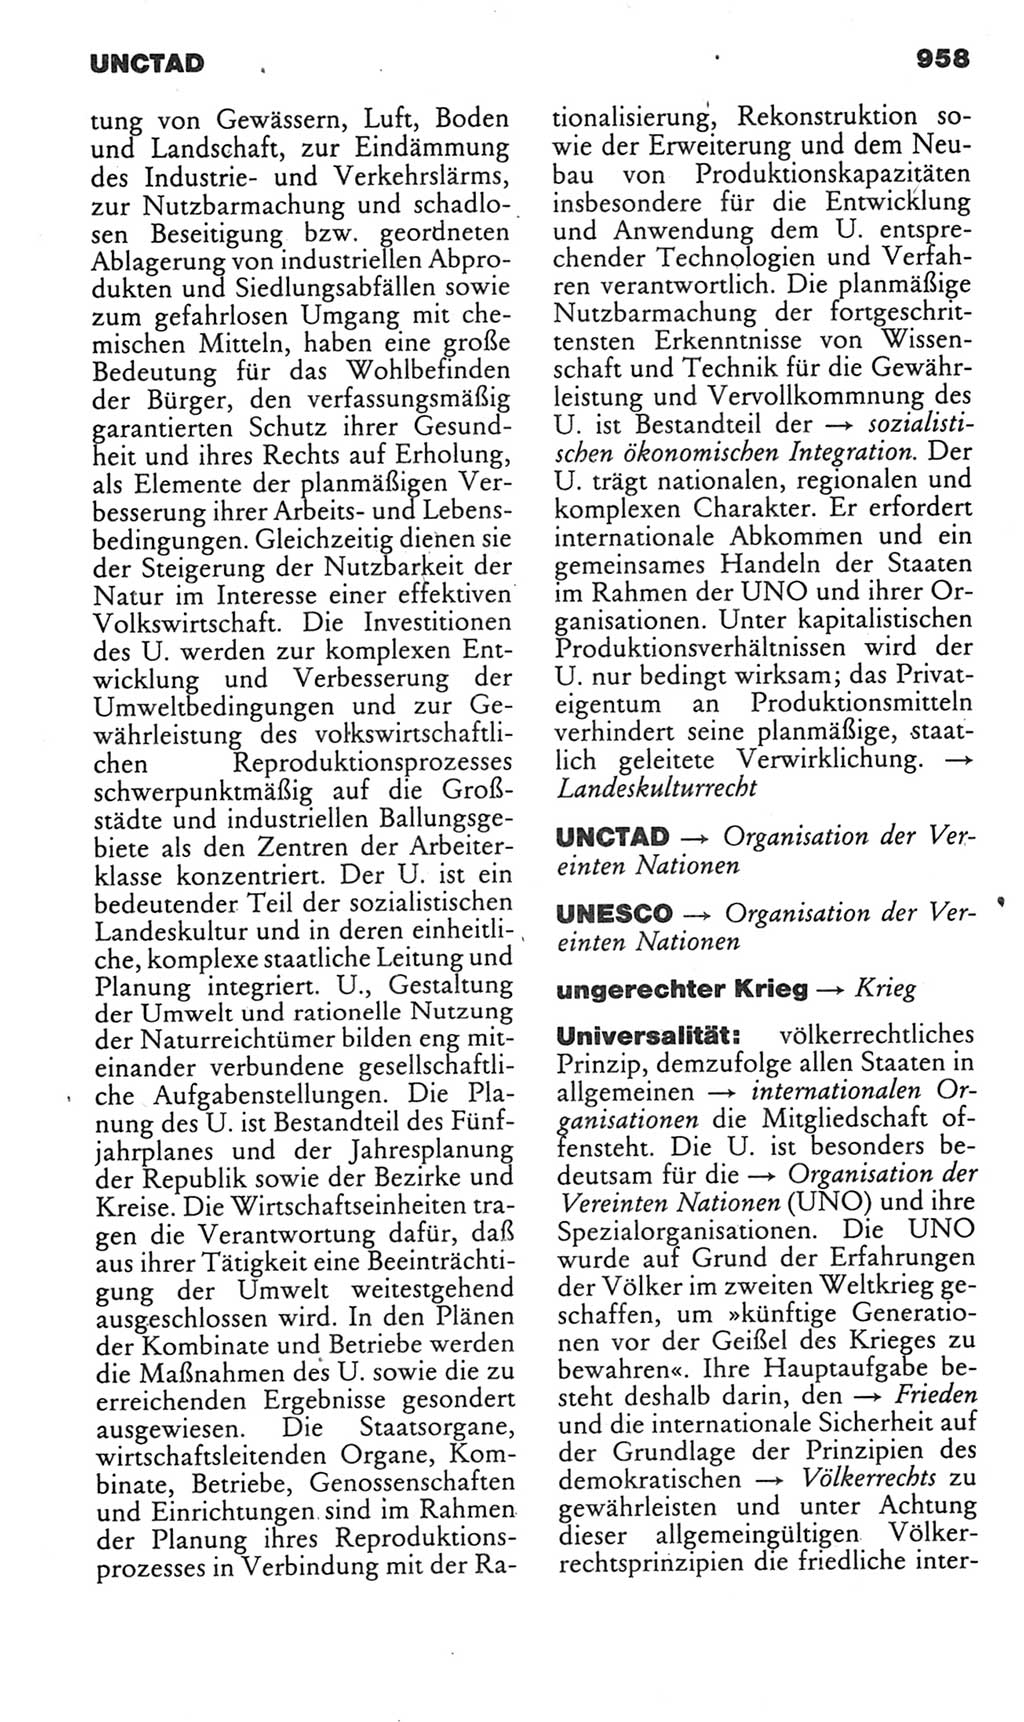 Kleines politisches Wörterbuch [Deutsche Demokratische Republik (DDR)] 1985, Seite 958 (Kl. pol. Wb. DDR 1985, S. 958)